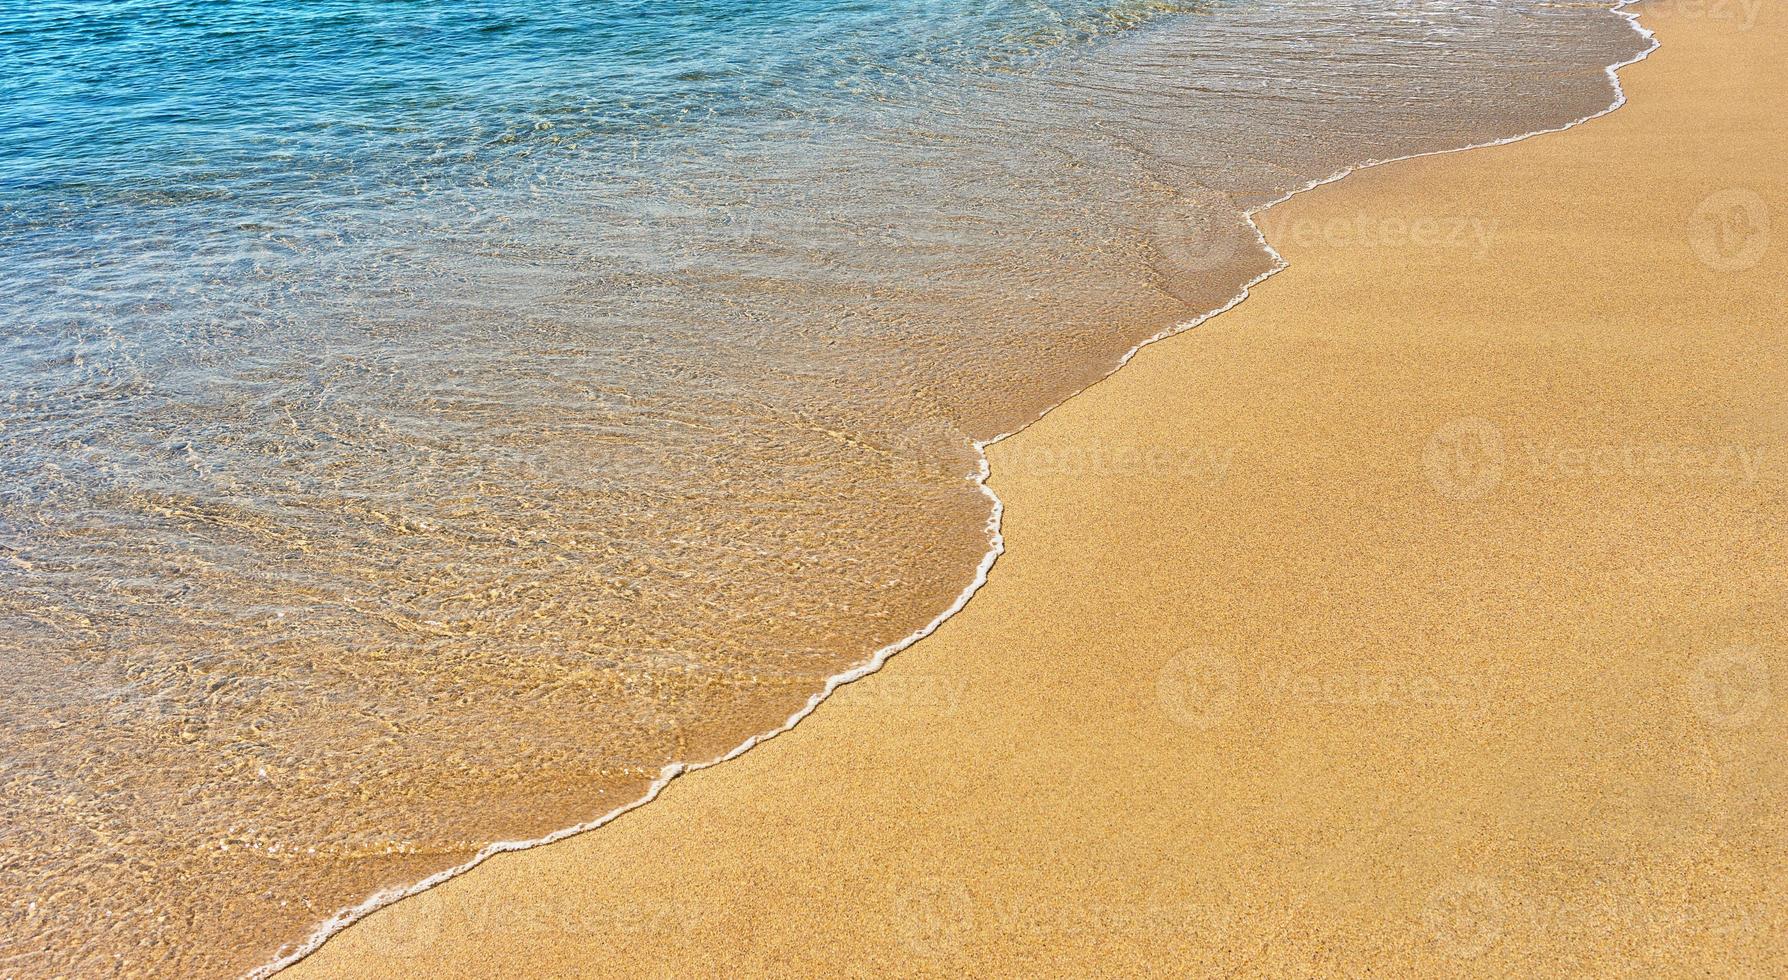 sabbia e acqua foto